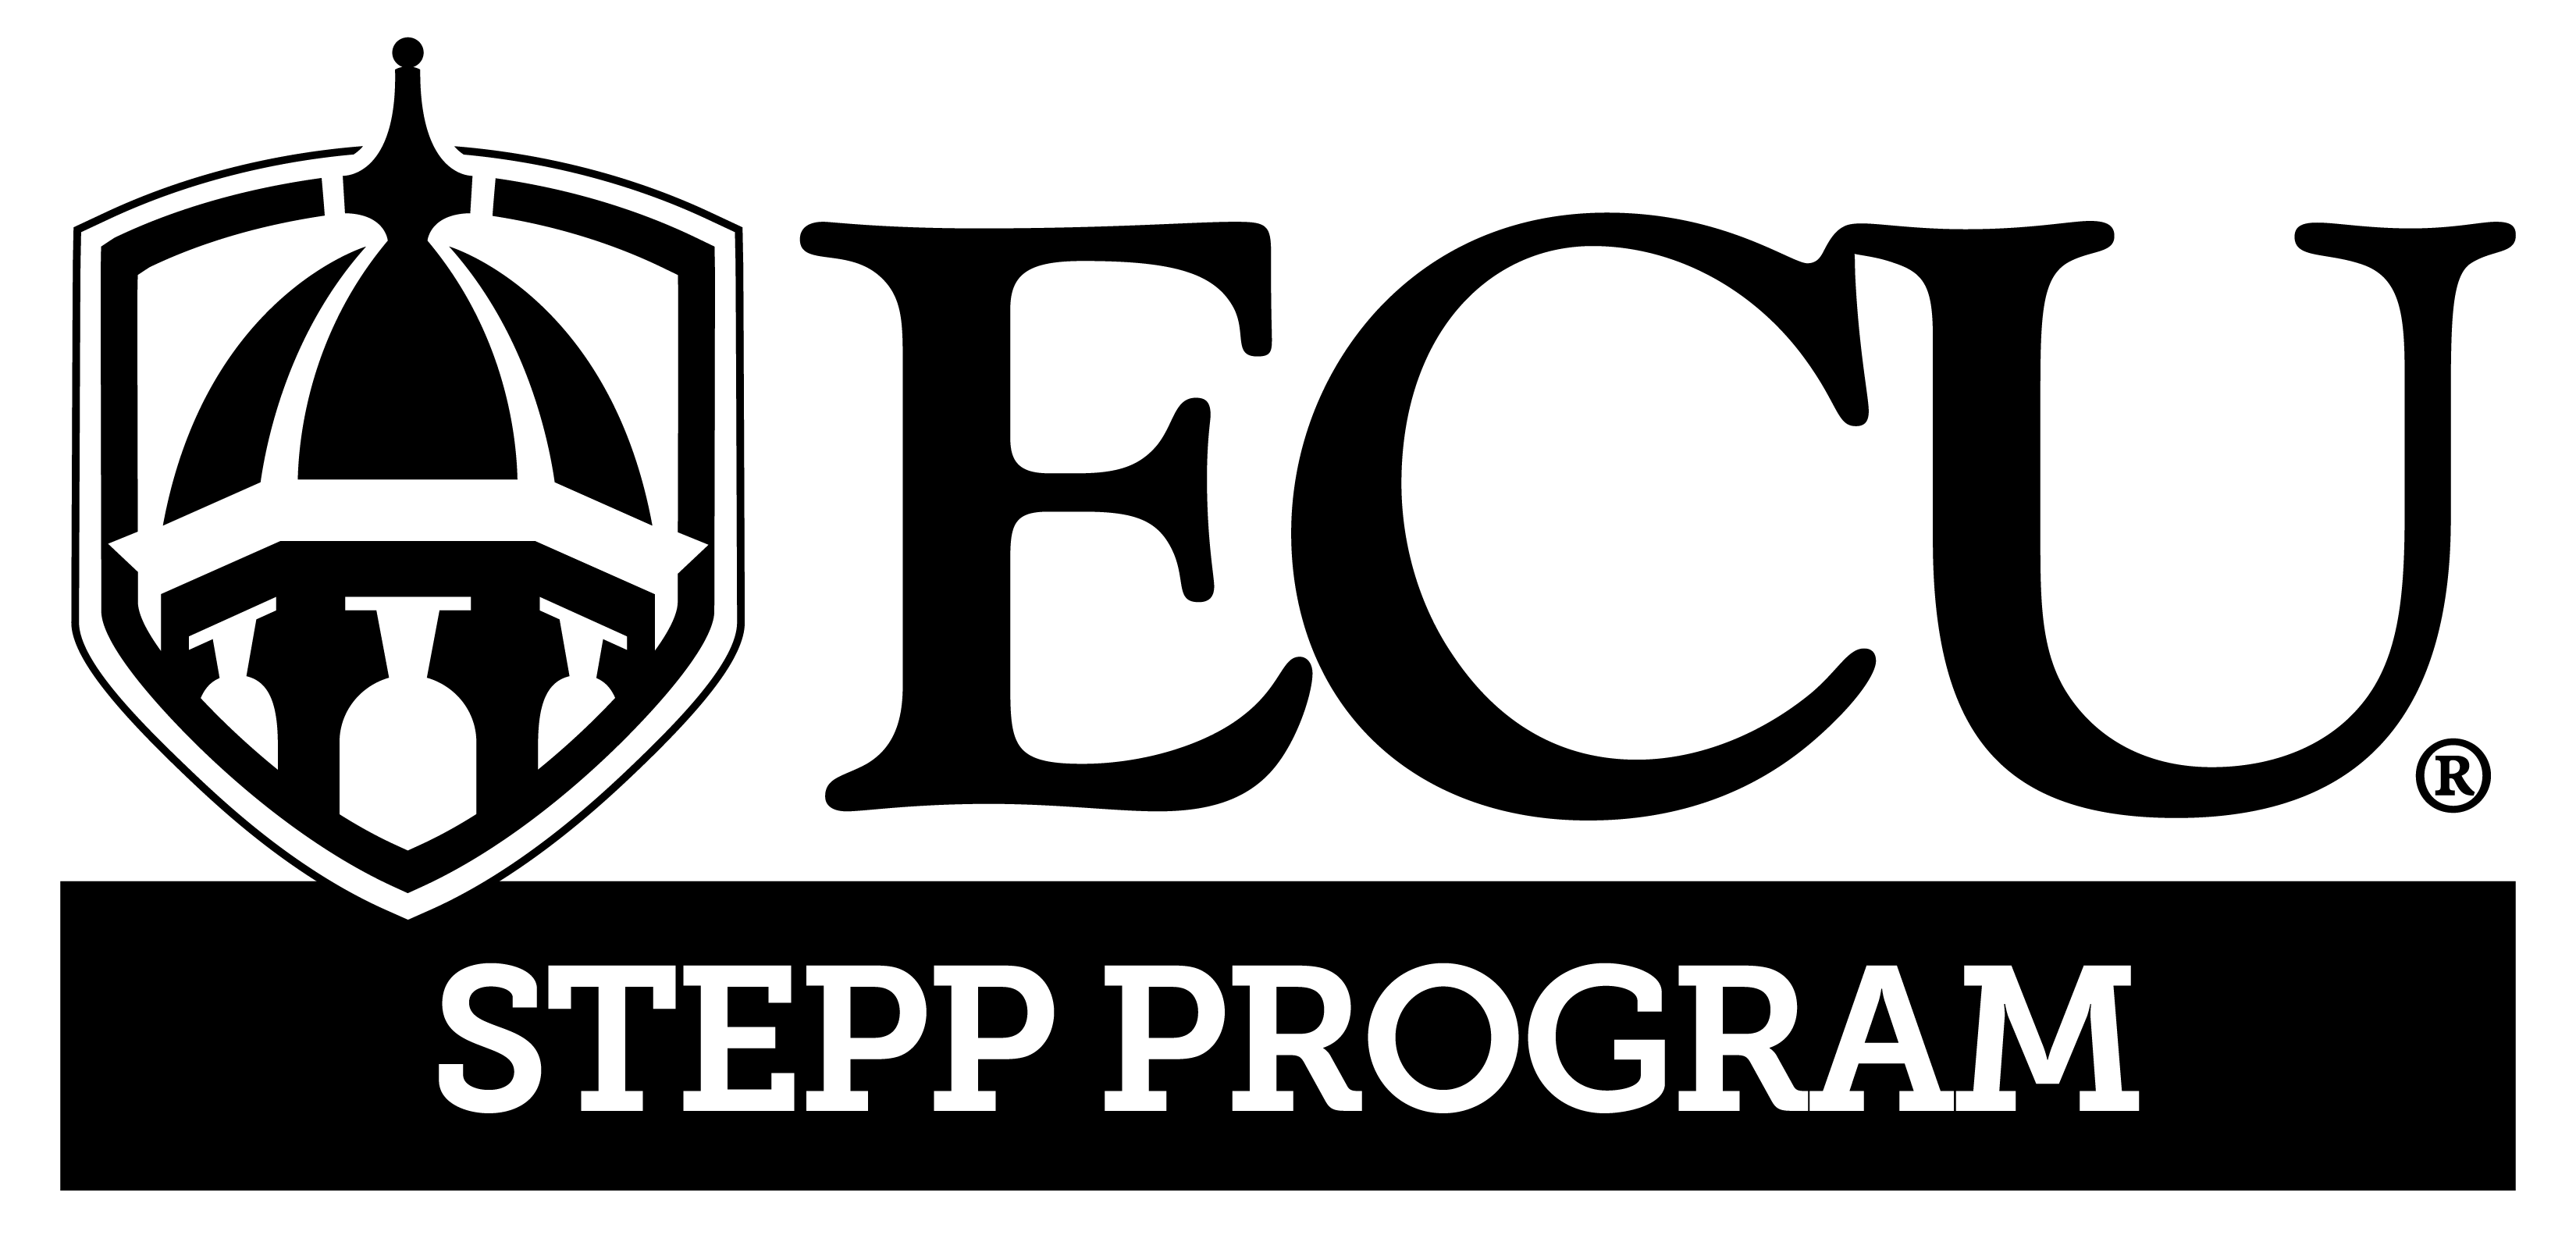 ECU STEPP Program